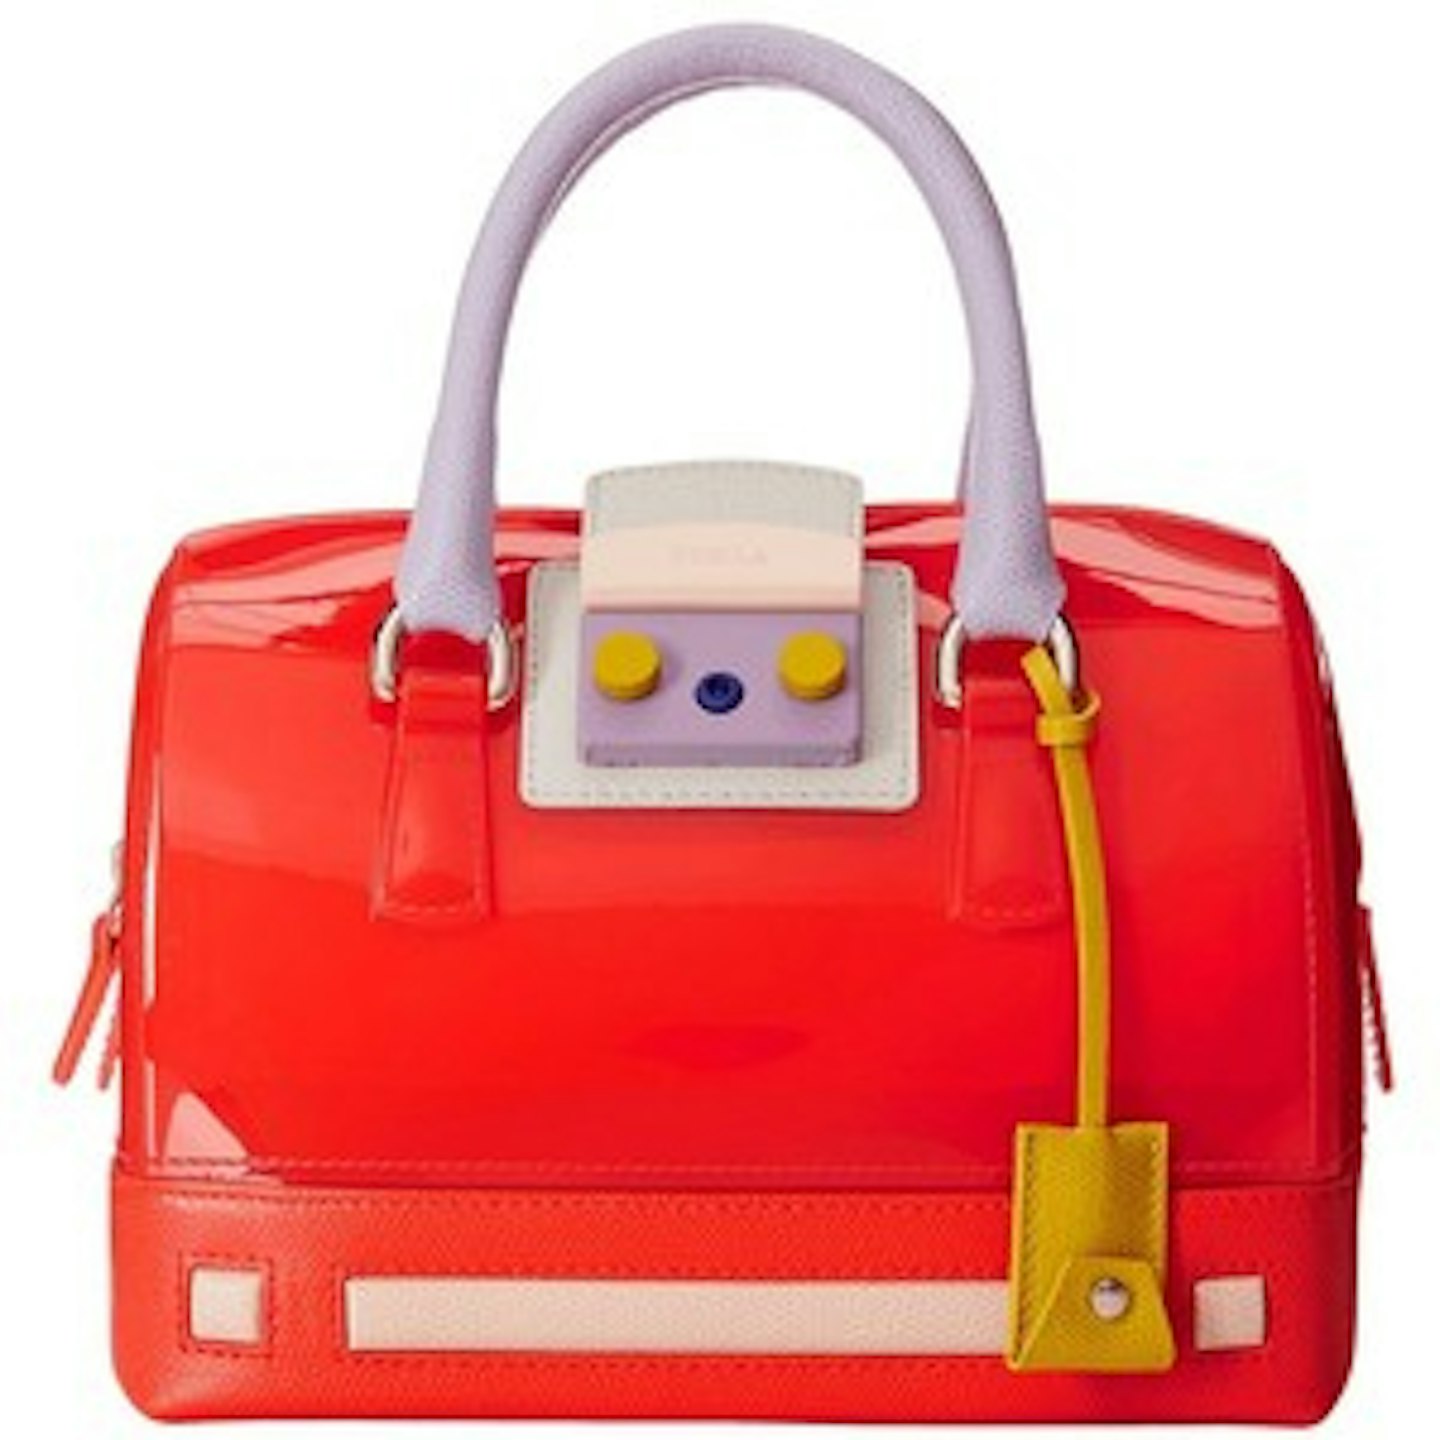 Bag, £185 (RRP £310), Furla